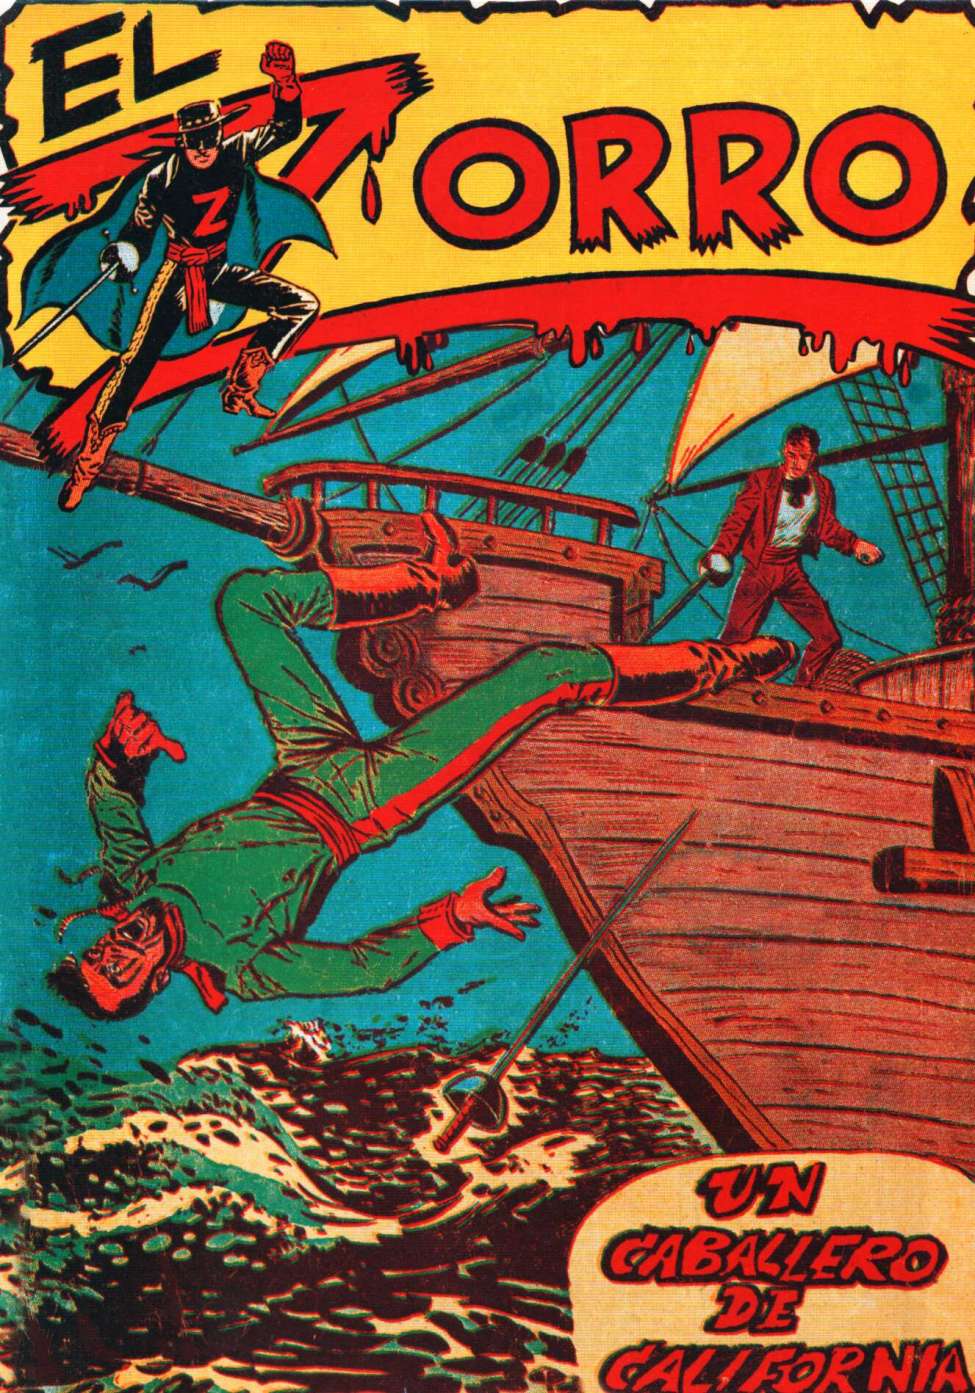 Book Cover For El Zorro 1 - Un Cabbalero de California